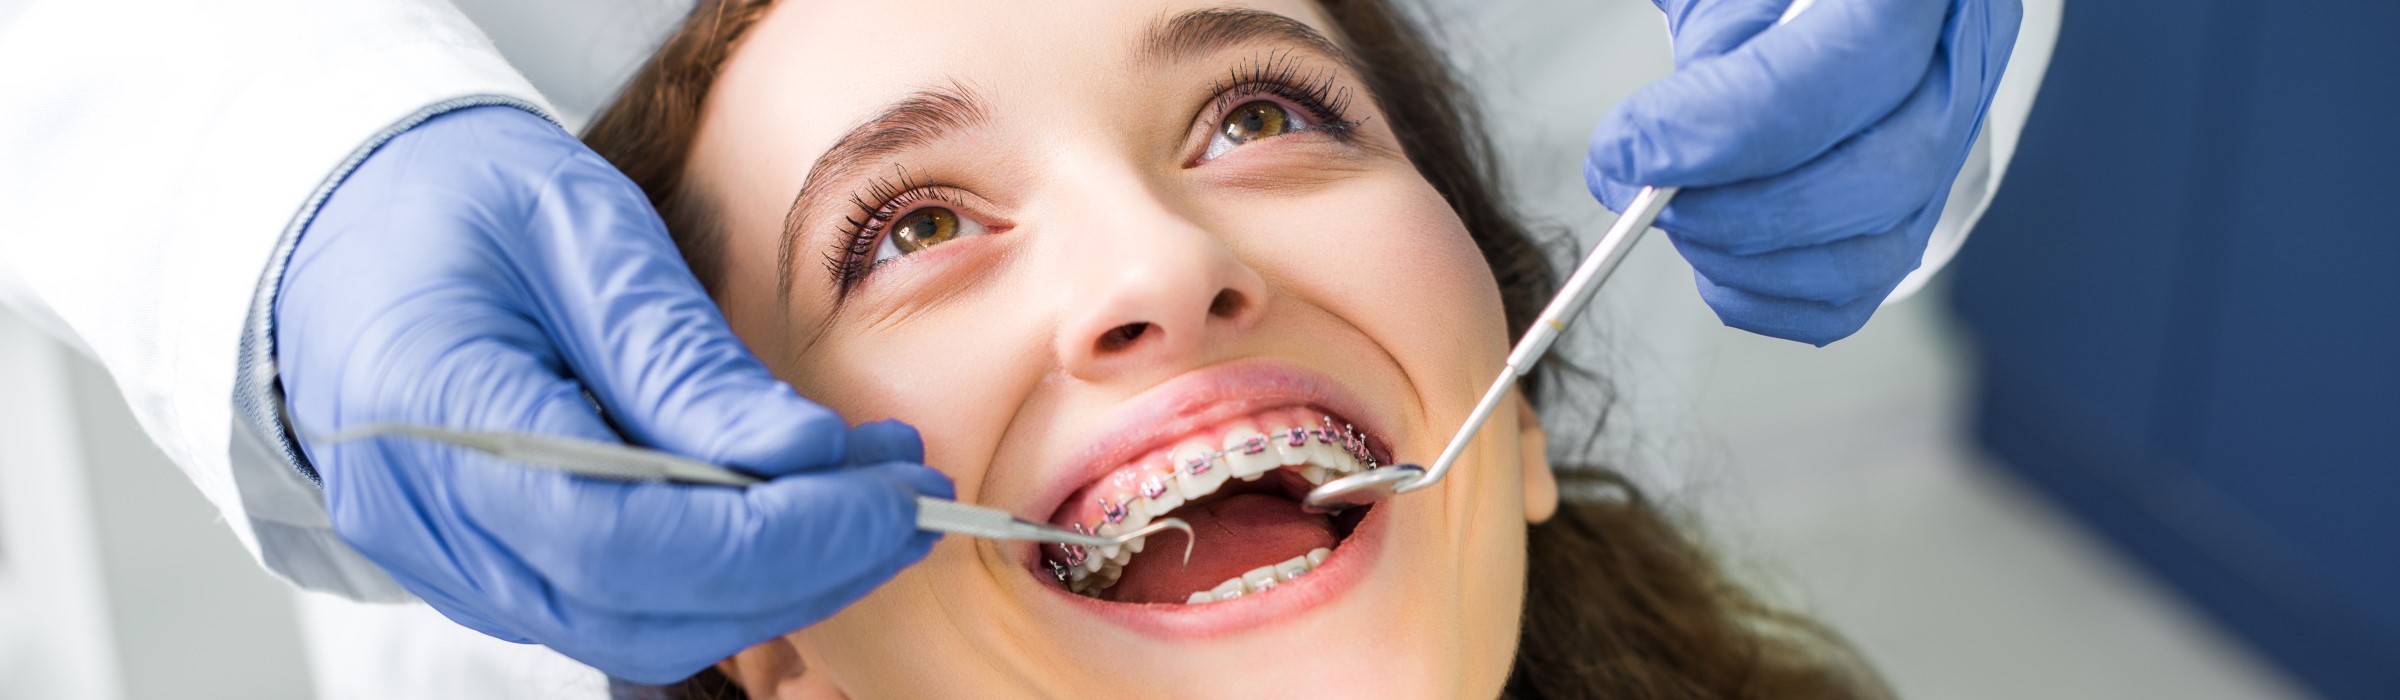 Zahnspange: Wann ist die Behandlung sinnvoll?